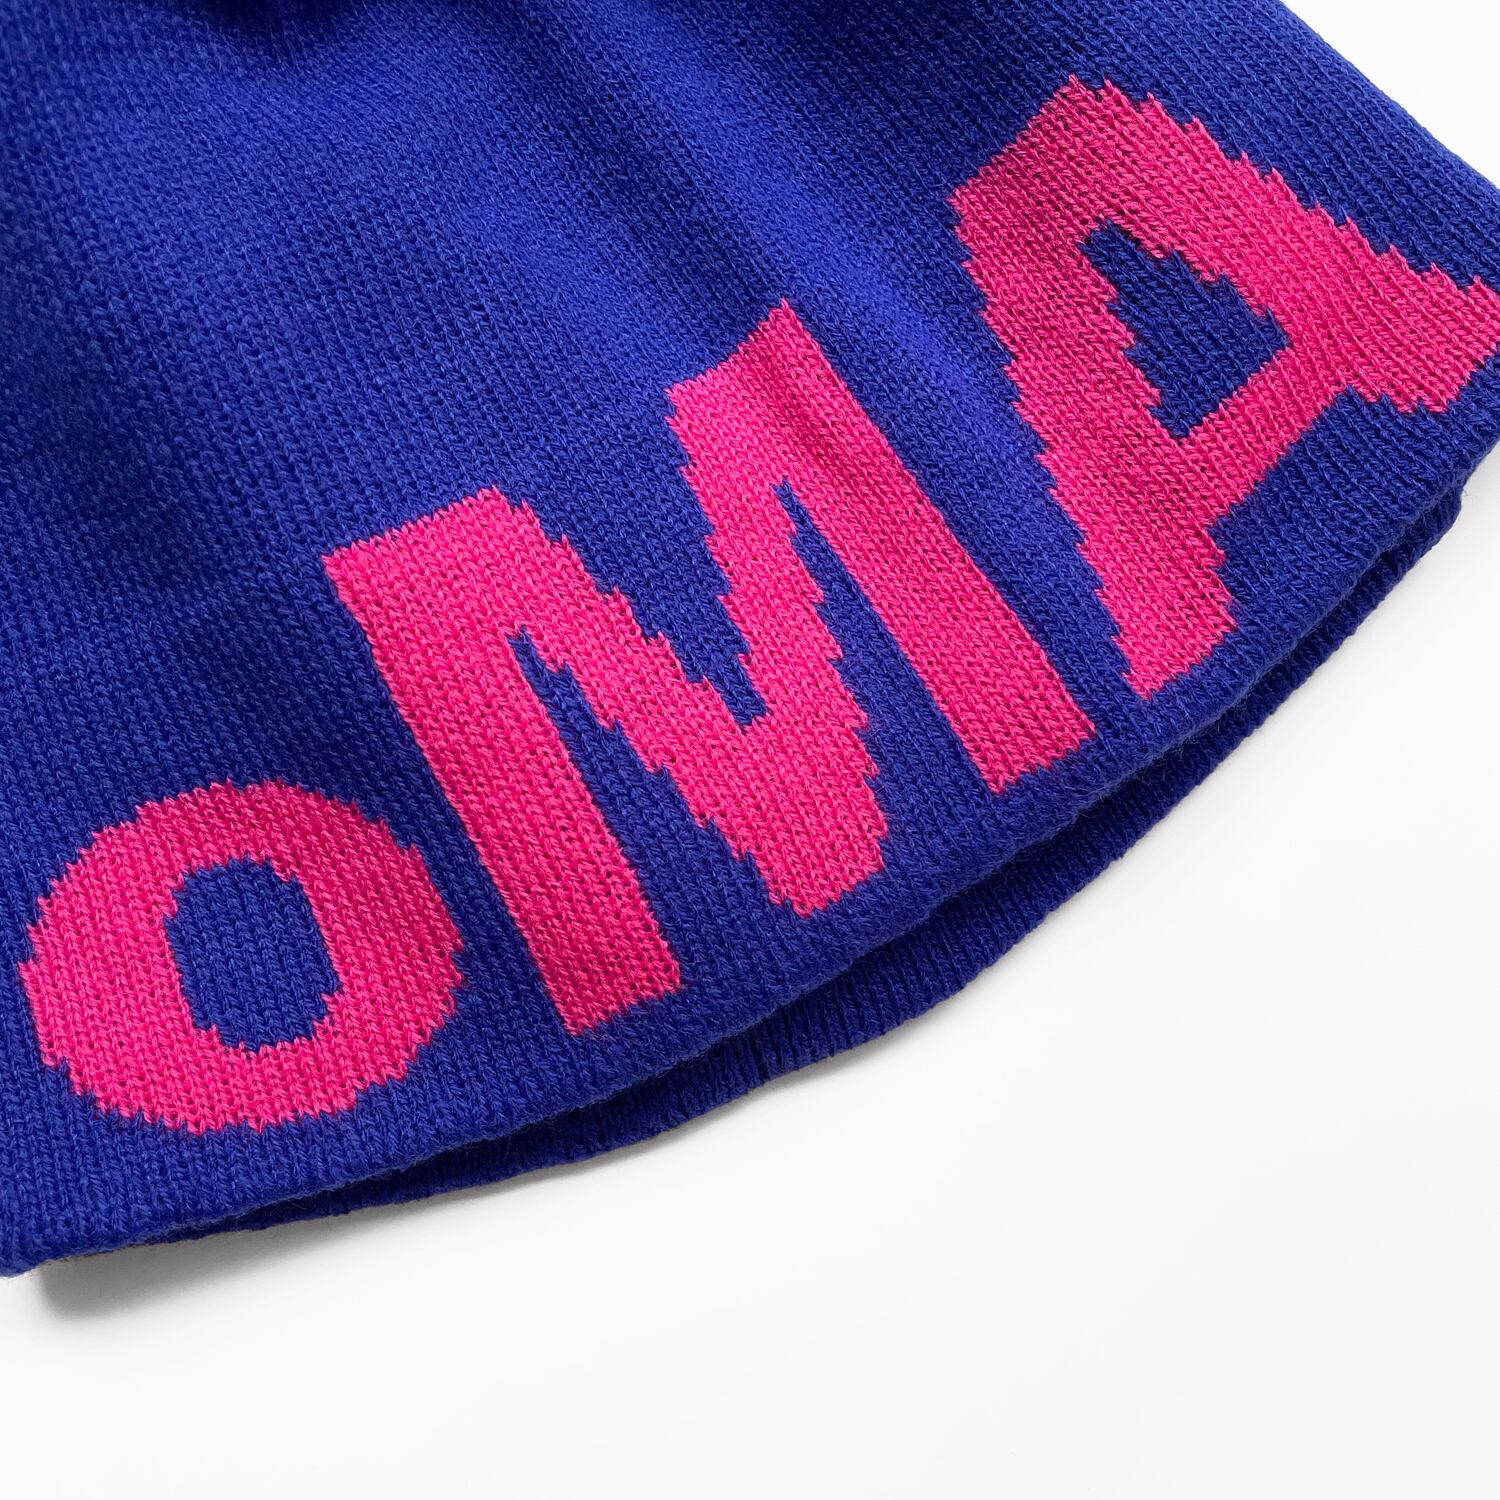 oMA 426 SKULL CAP (BLACK) 海外限定アパレル - ニットキャップ/ビーニー